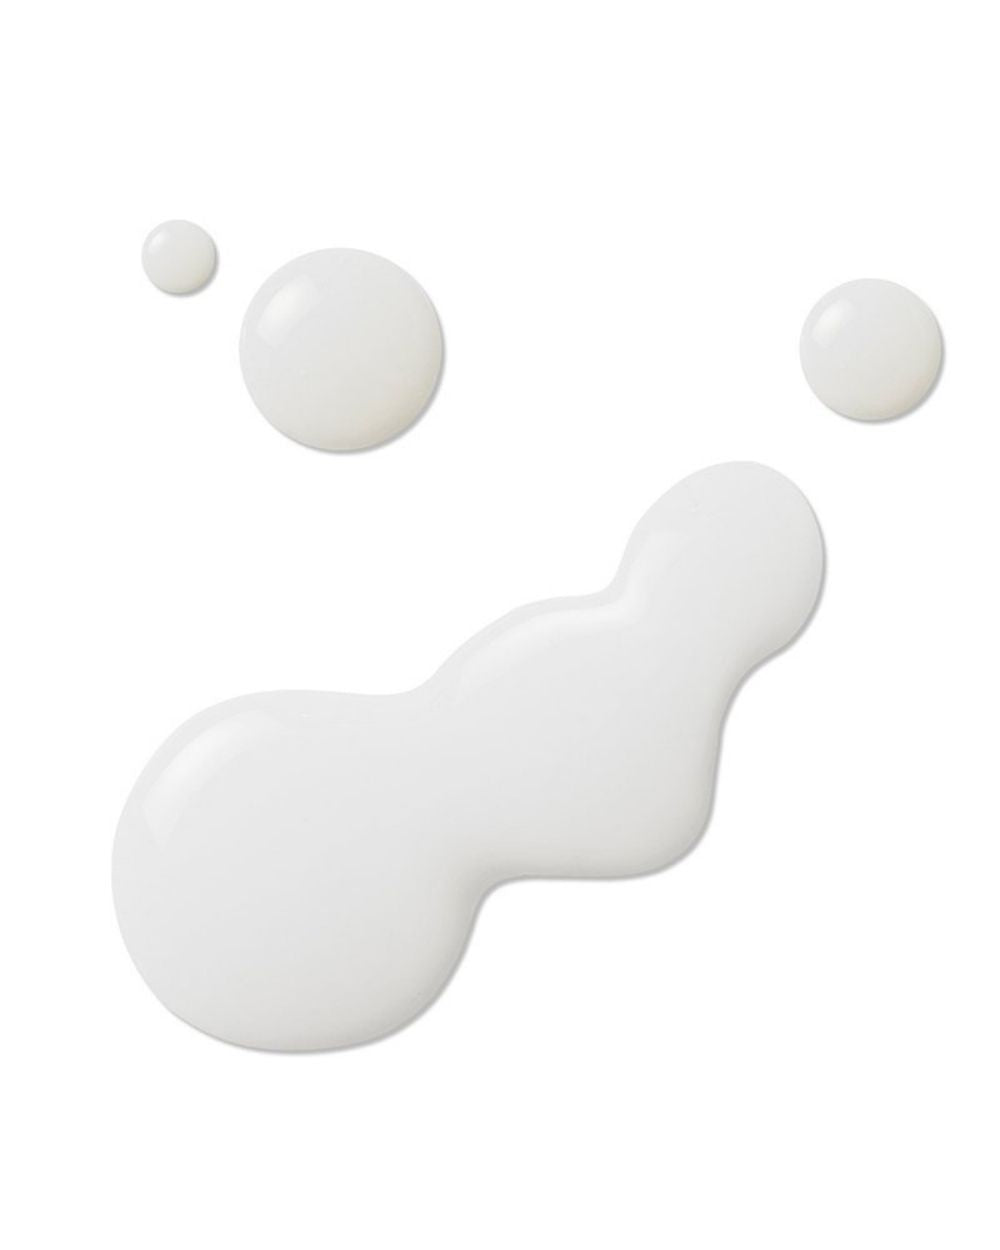 COSRX - Balancium Comfort Ceramide Cream Mist